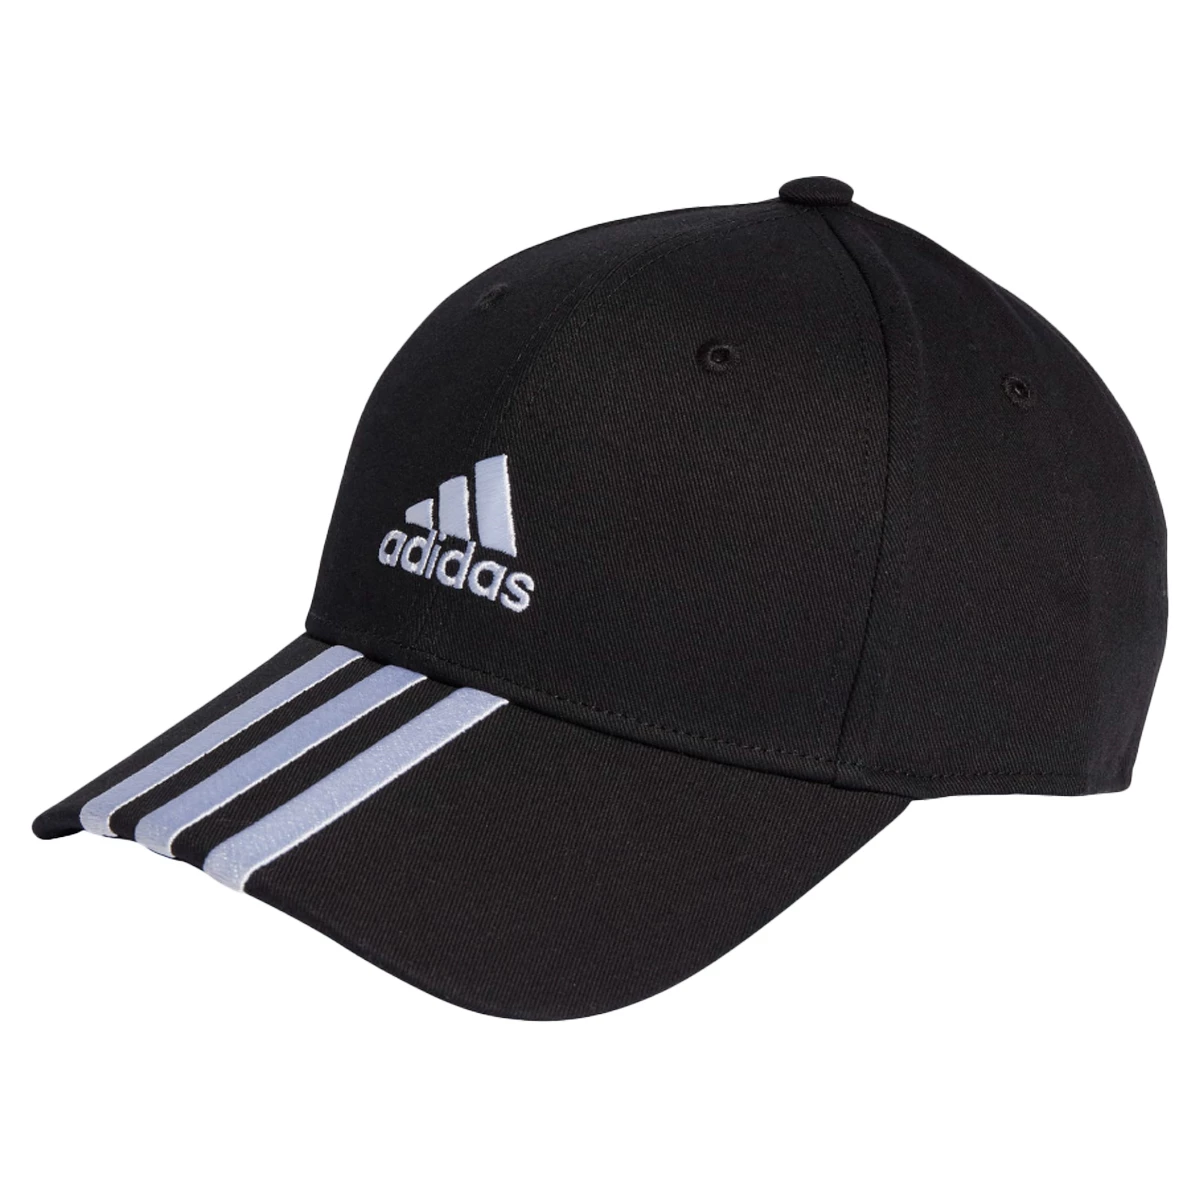 Afbeelding van Adidas Bball 3s cap